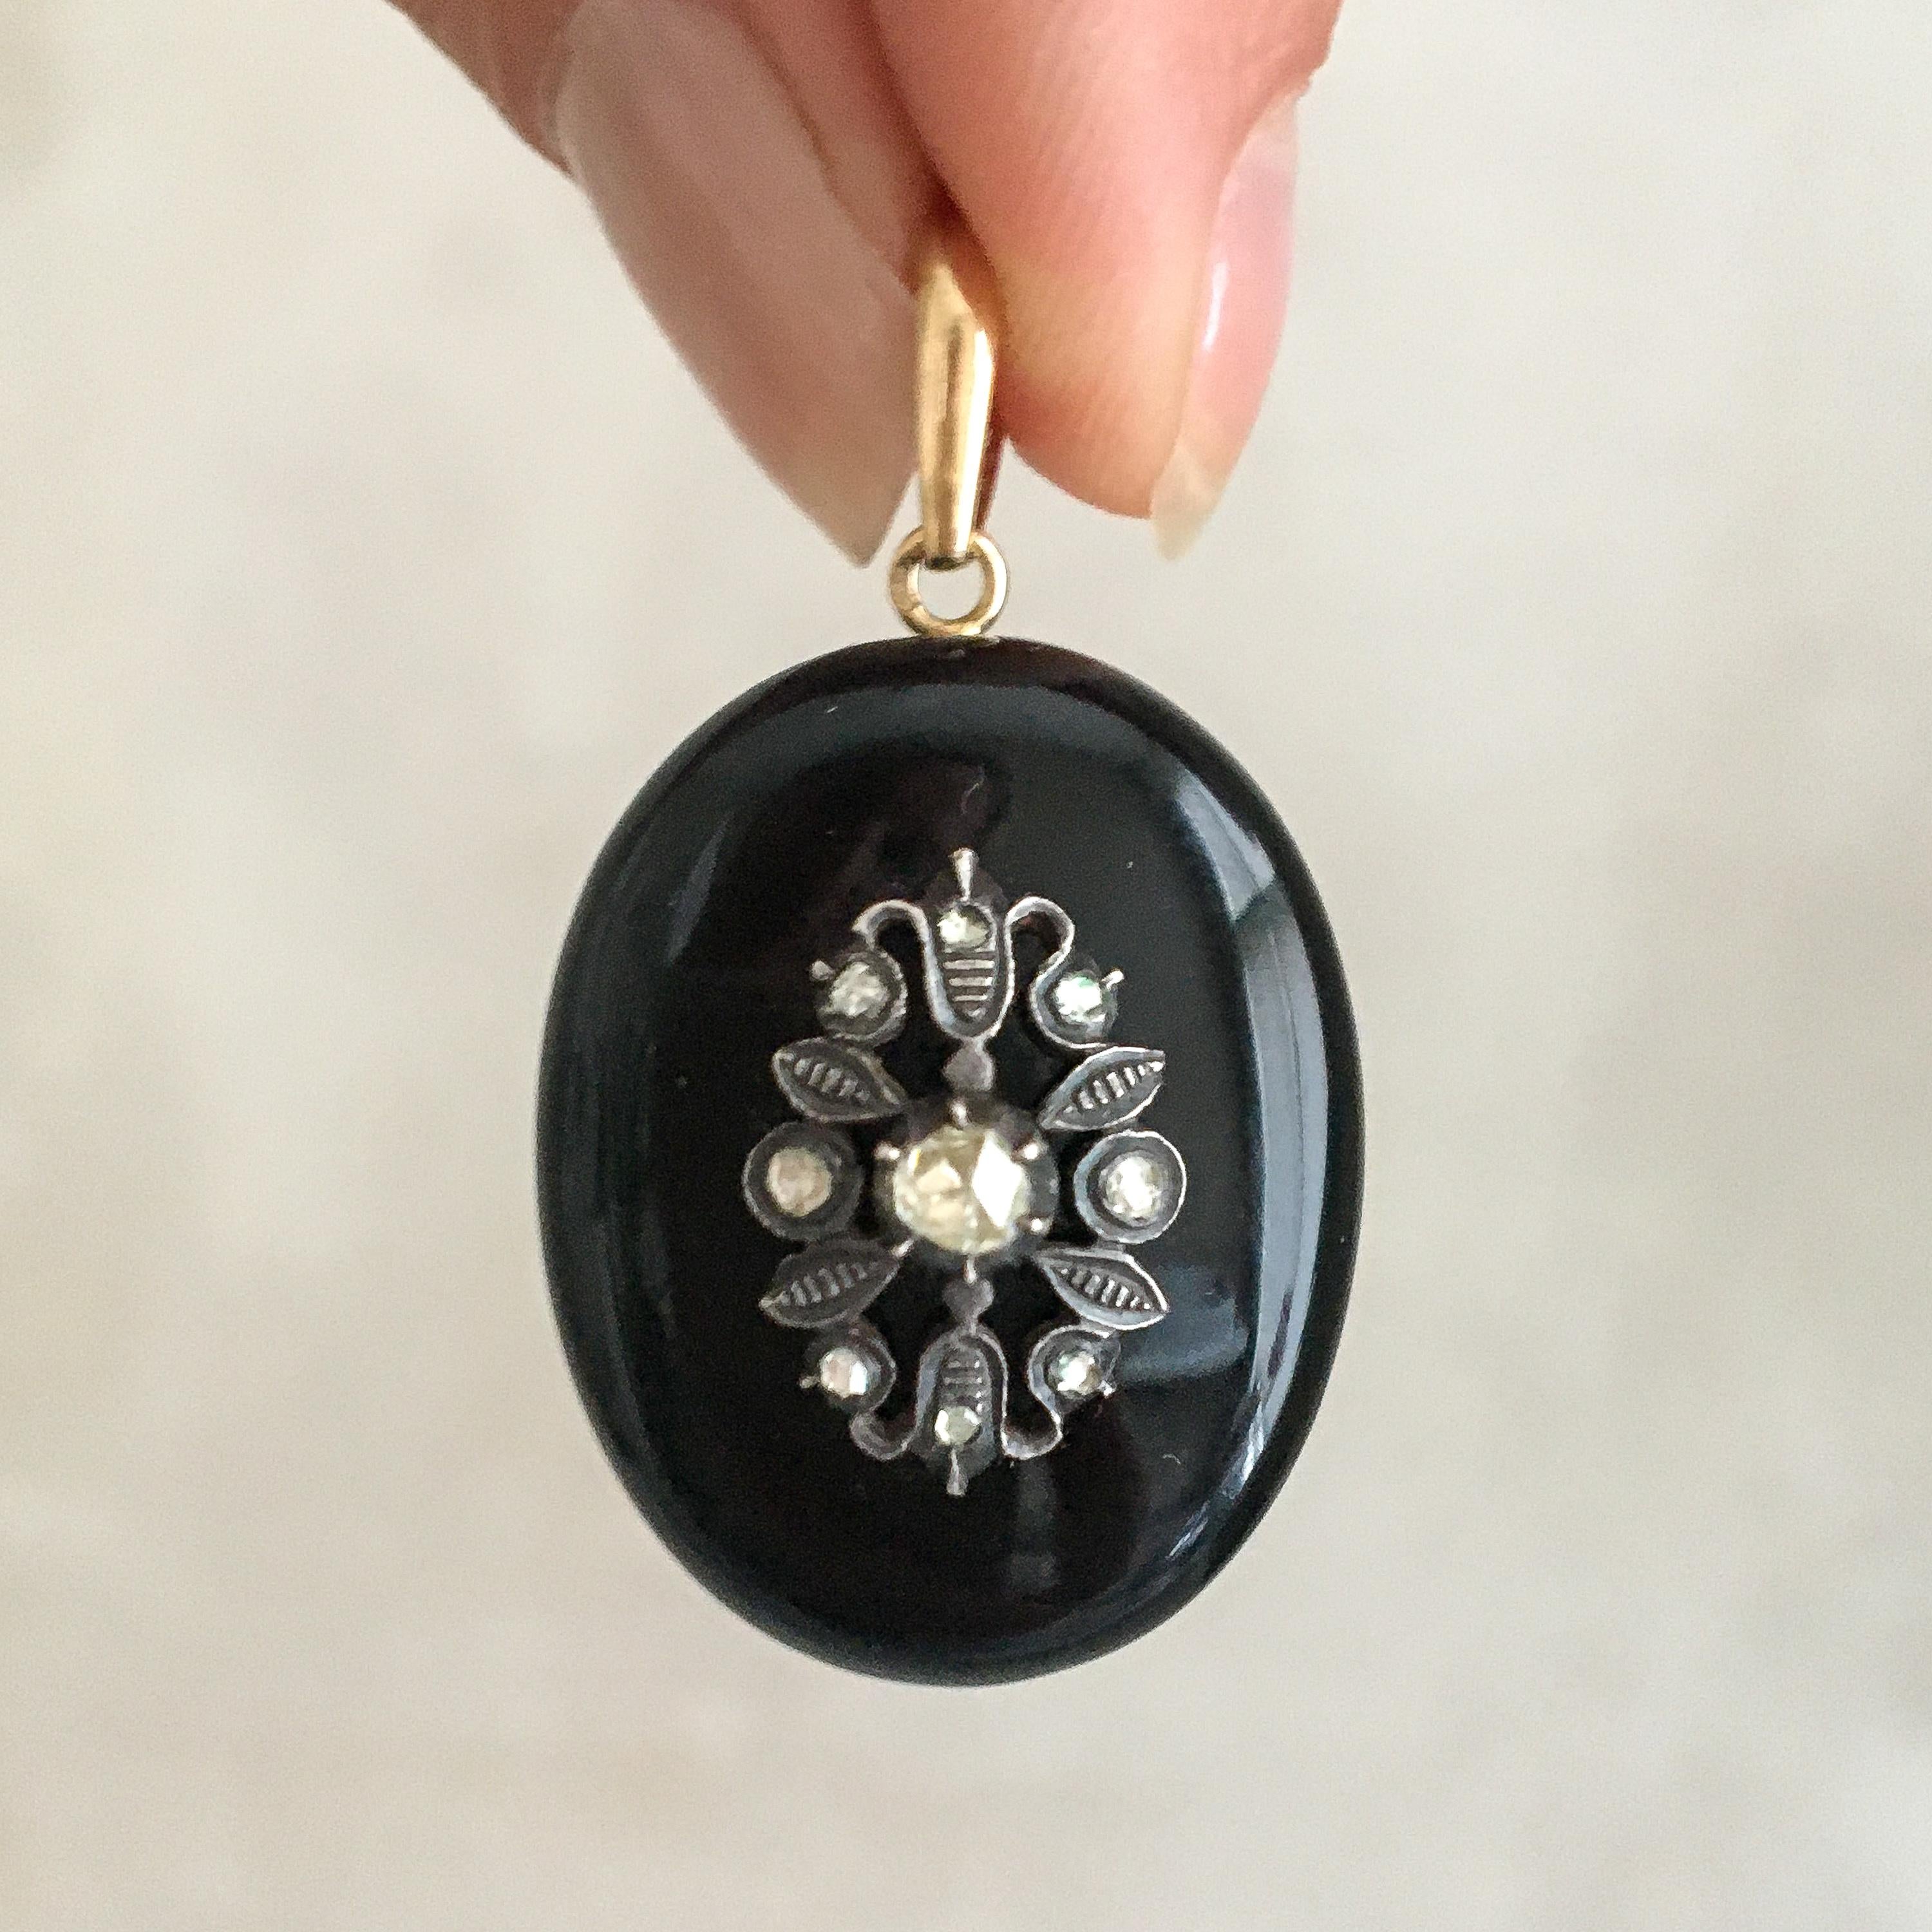 Pendentif en forme de médaillon en diamant et onyx, datant de la fin de l'époque victorienne, 1880-1890. Au centre, la pierre d'onyx est ornée d'un décor floral en argent serti de diamants taillés en rose. Le pendentif est de forme ovale et est